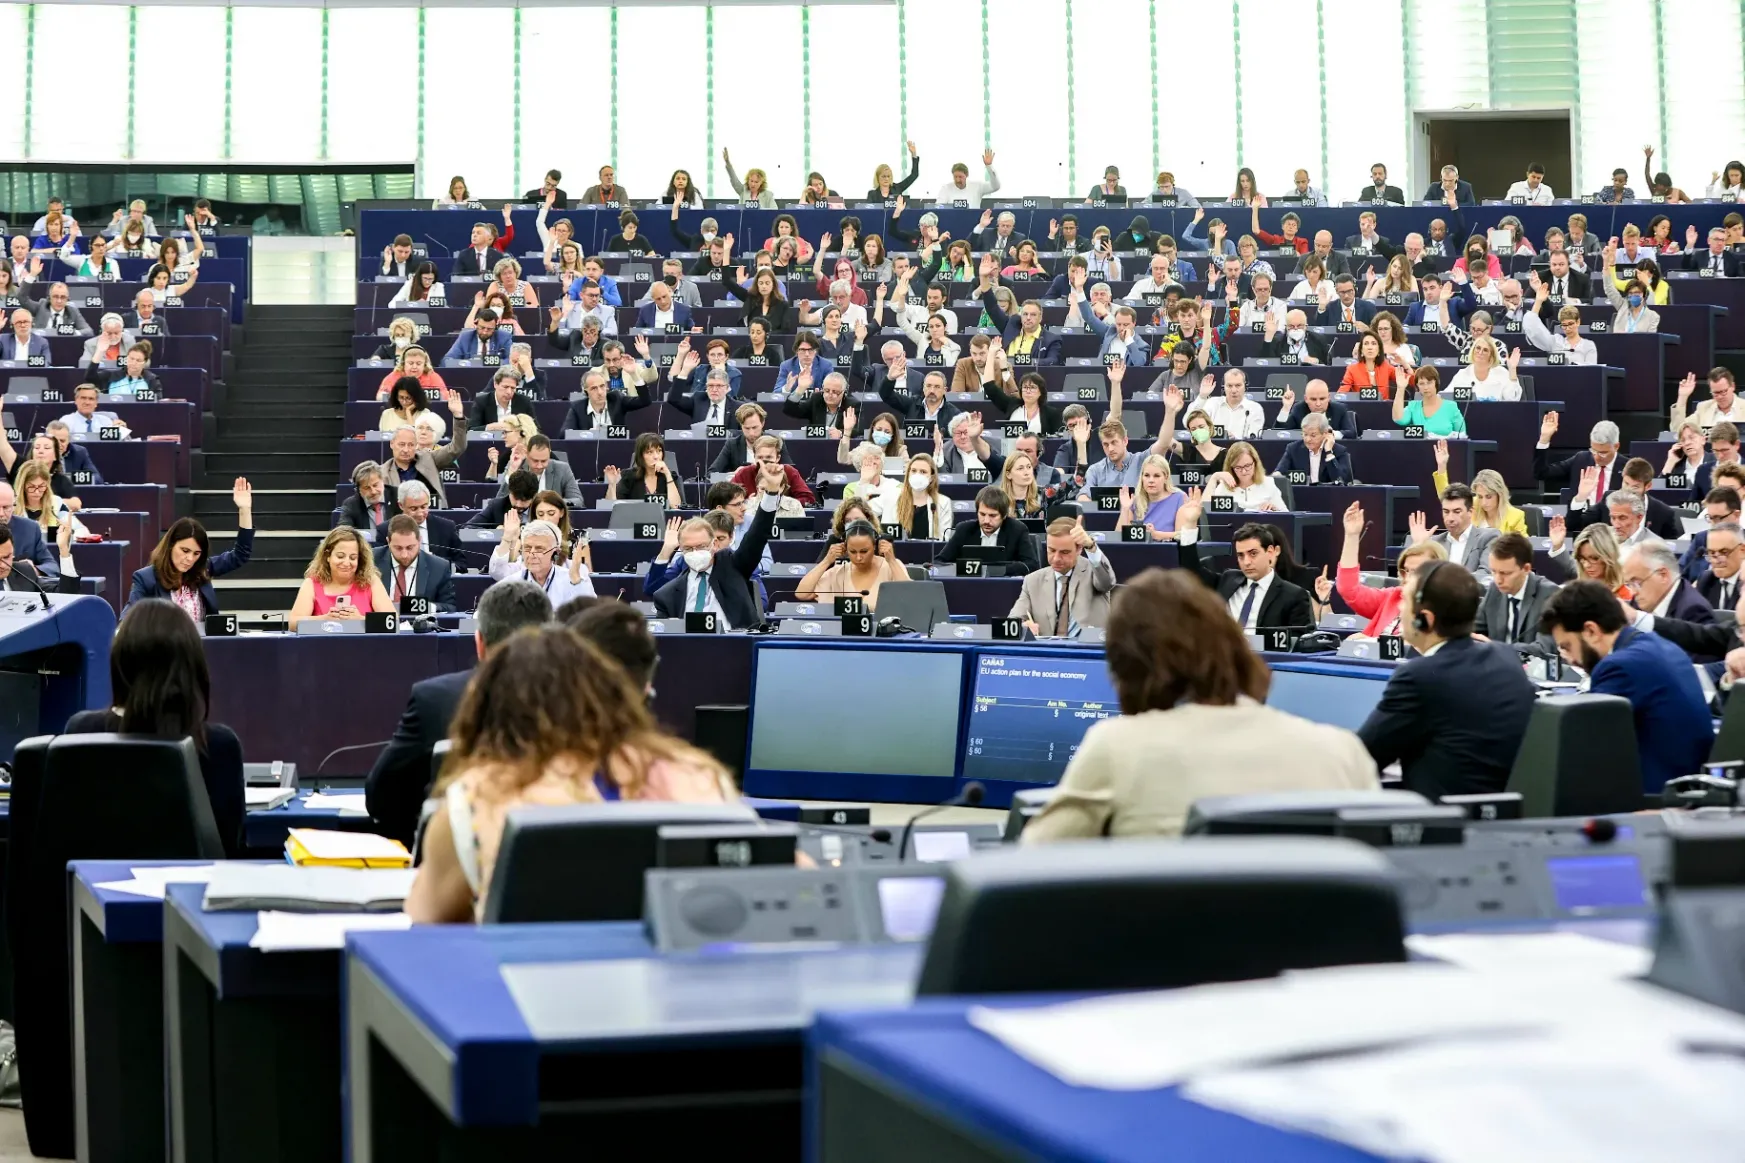 Elfogadta az EP plenáris ülése a Magyarországot érintő állásfoglalást